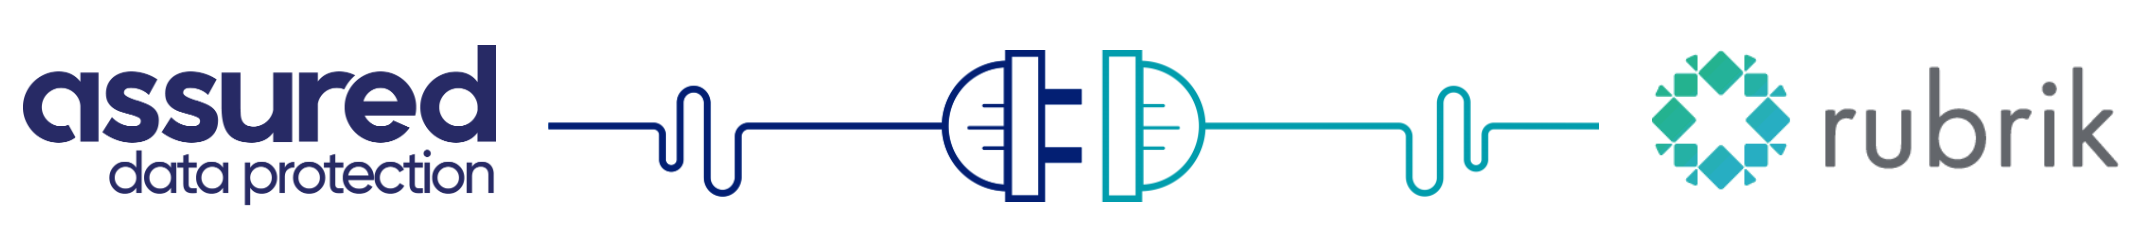 ADP rubrik logo.png